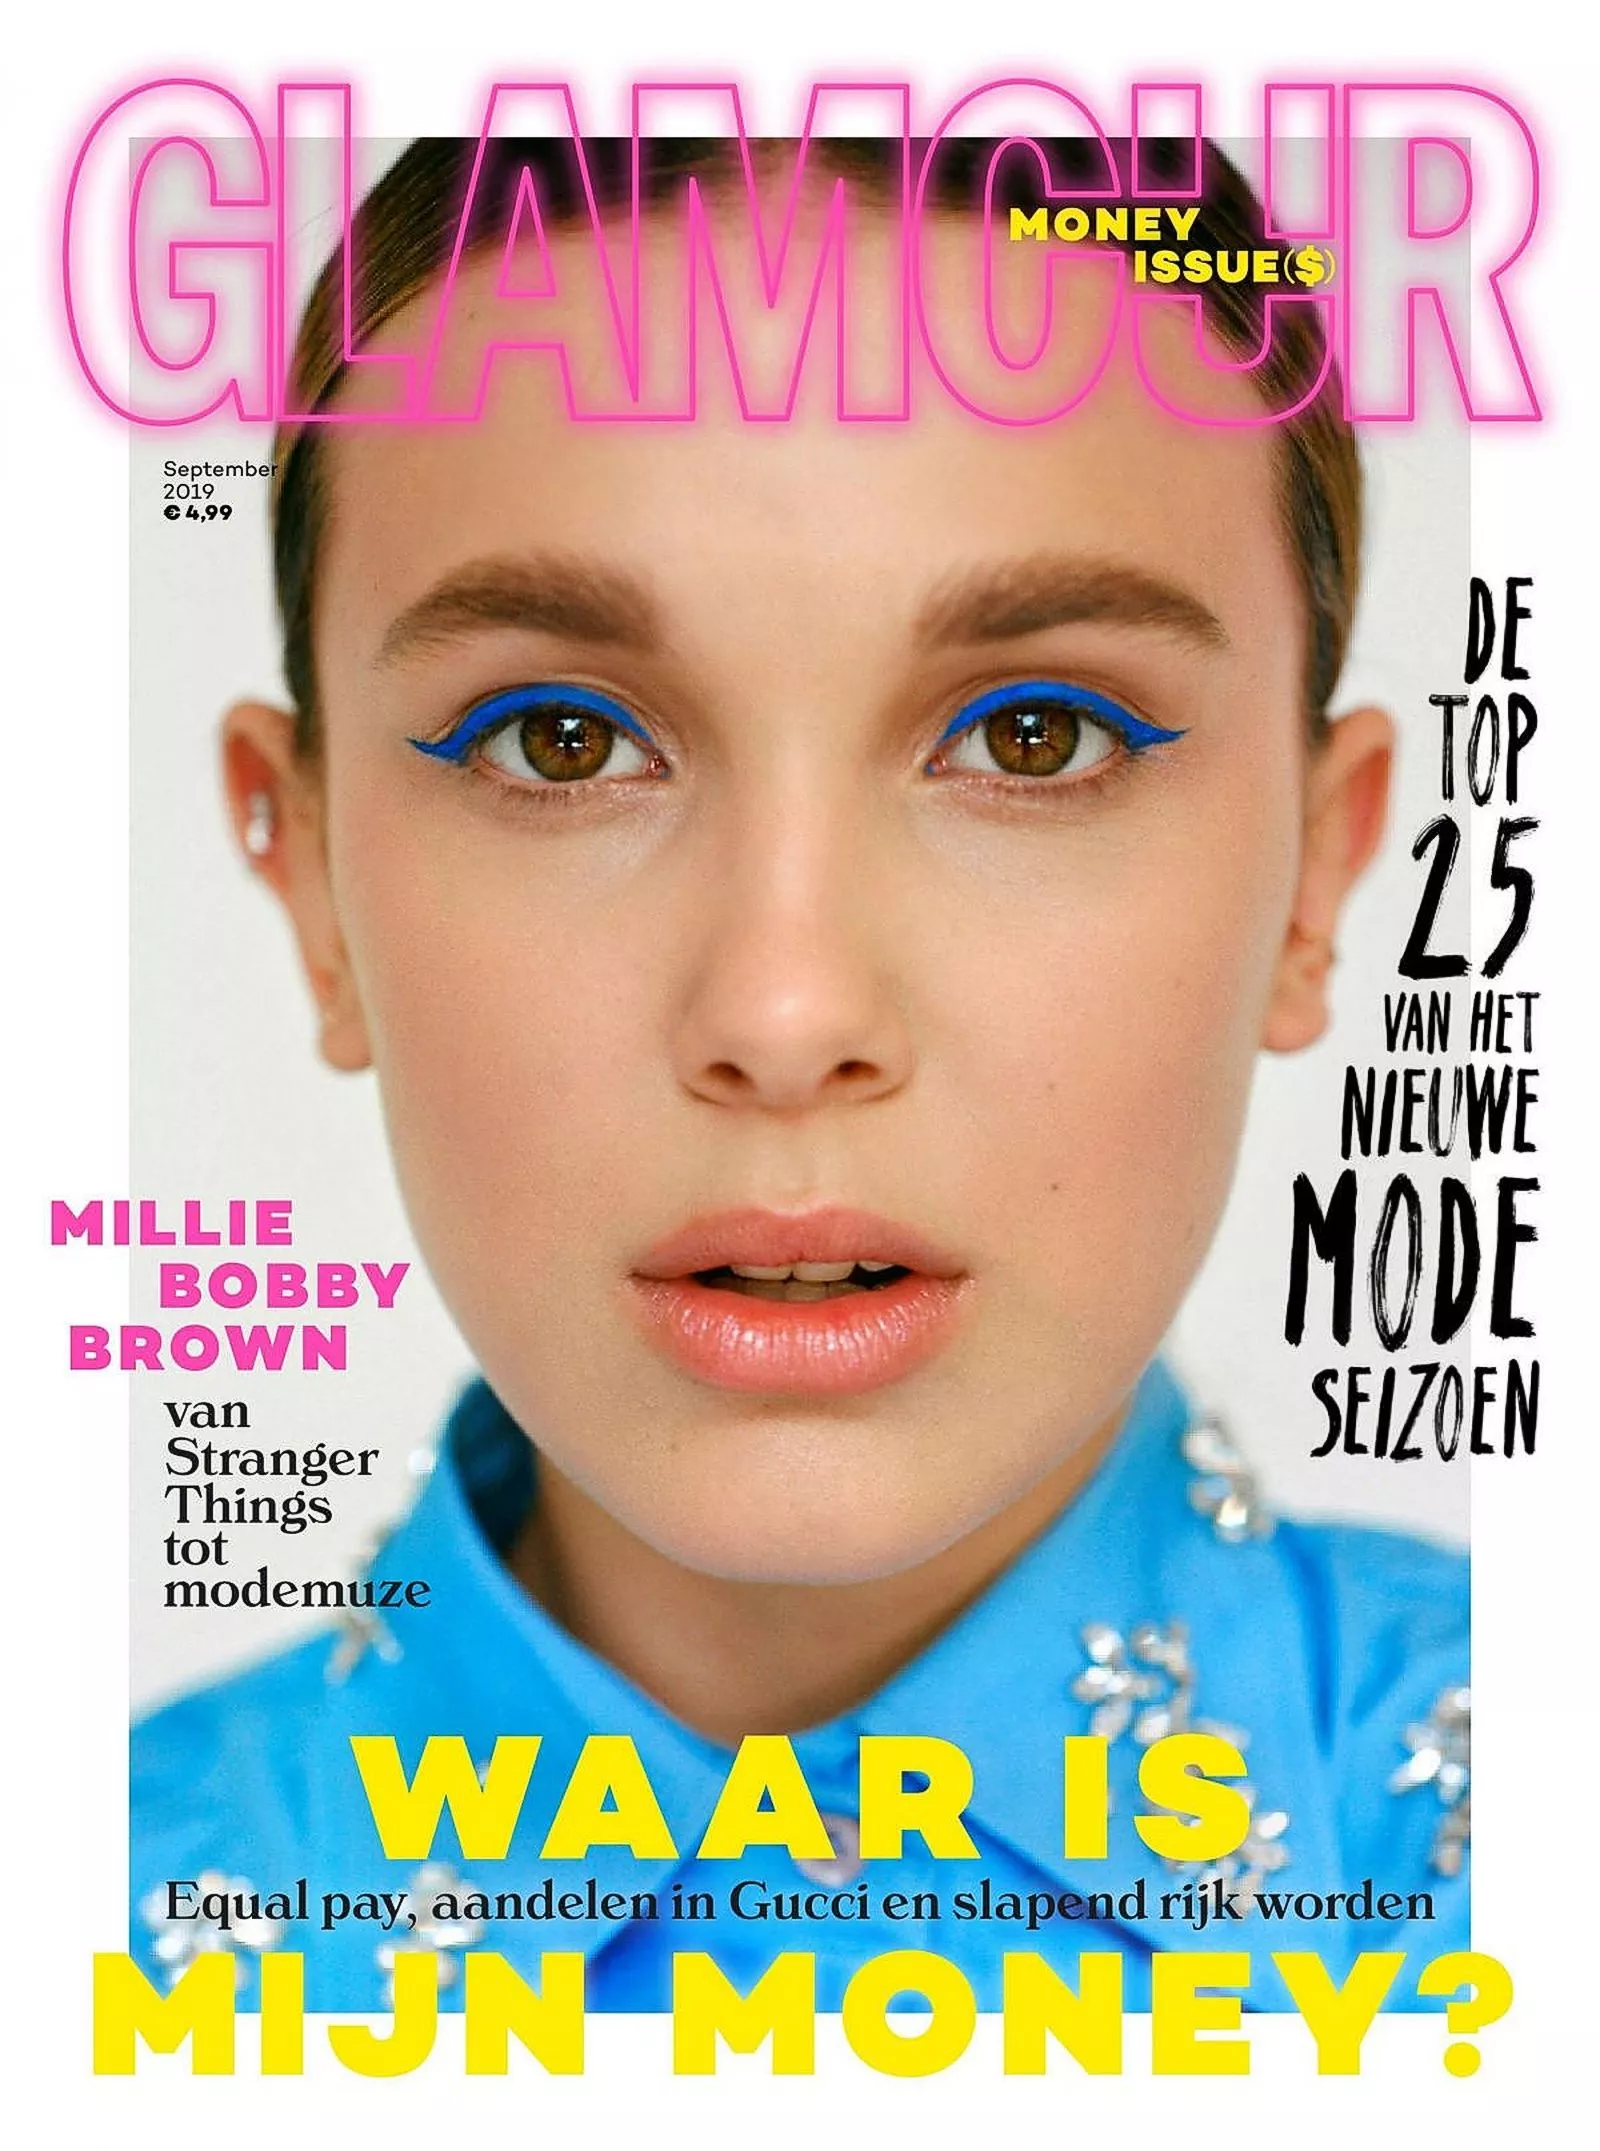 Милли Бобби Браун на обложке журнала Glamour, сентябрь 2019 г.